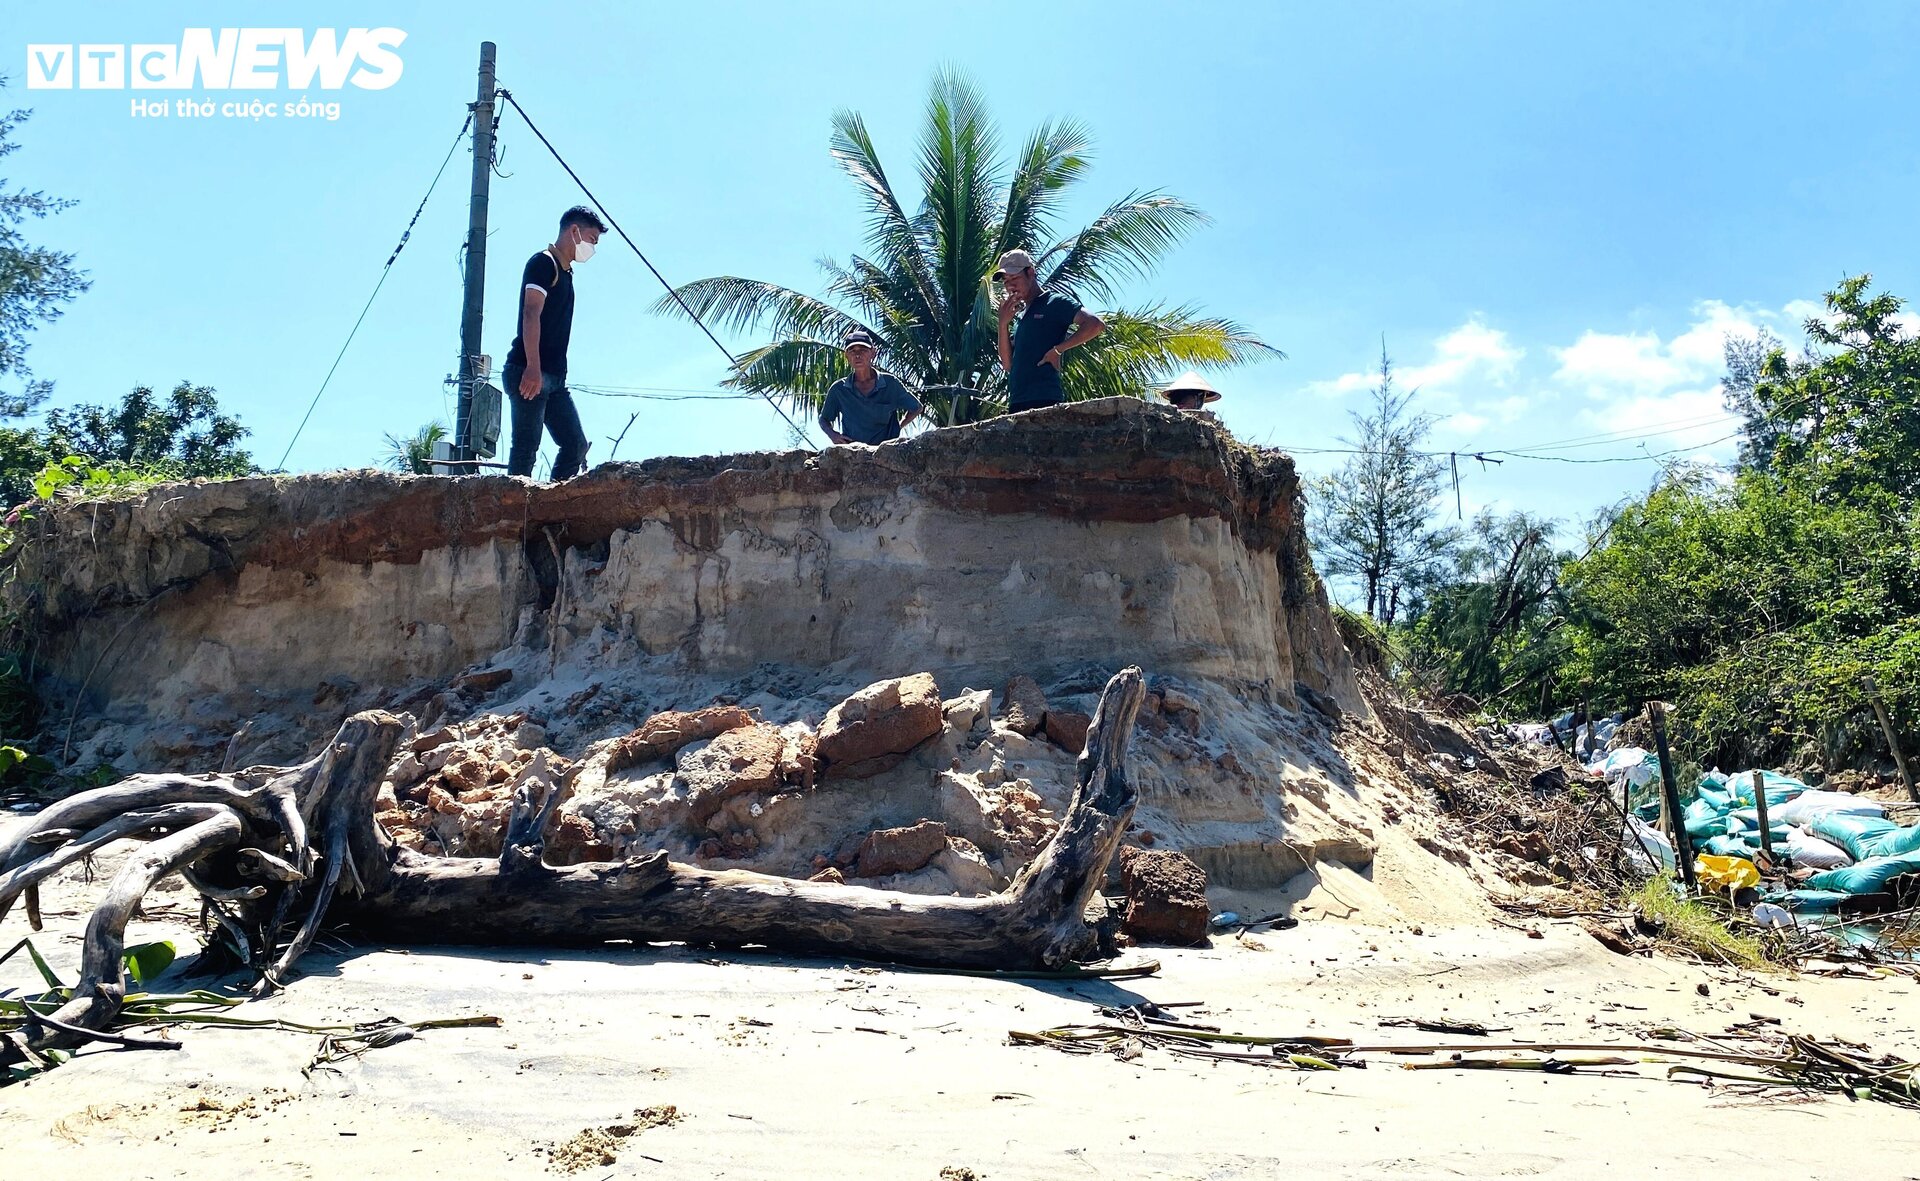 Triều cường công phá bờ biển suốt 1 thập kỷ, 'nuốt chửng' nhà cửa ở Quảng Nam - 6